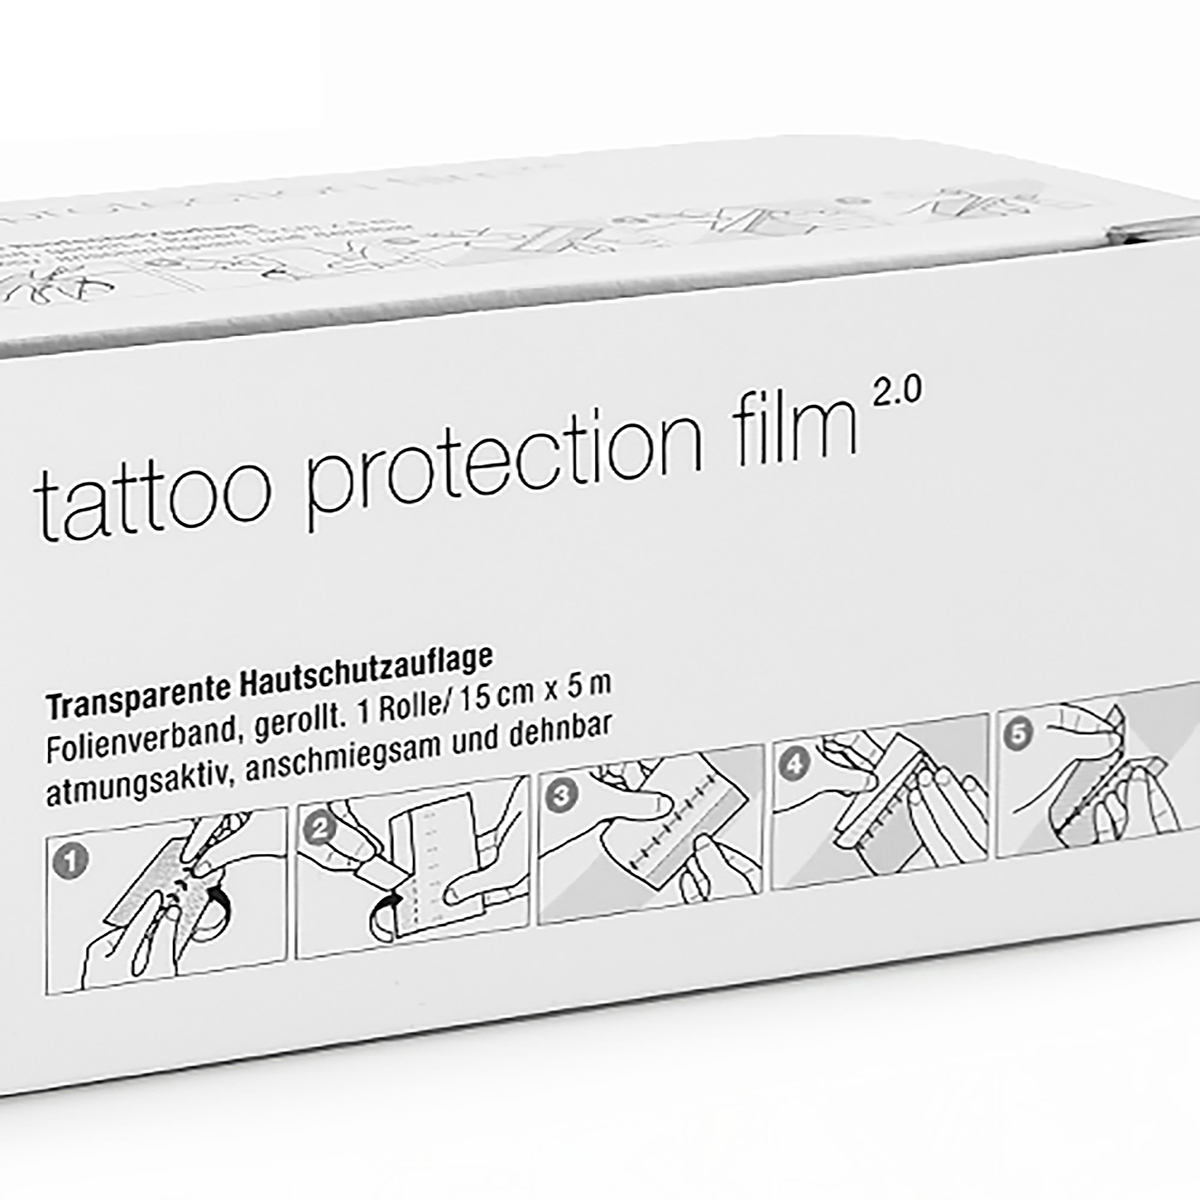 TattooMed Tattoo Protection Film - 2.0 | PZN 12347950